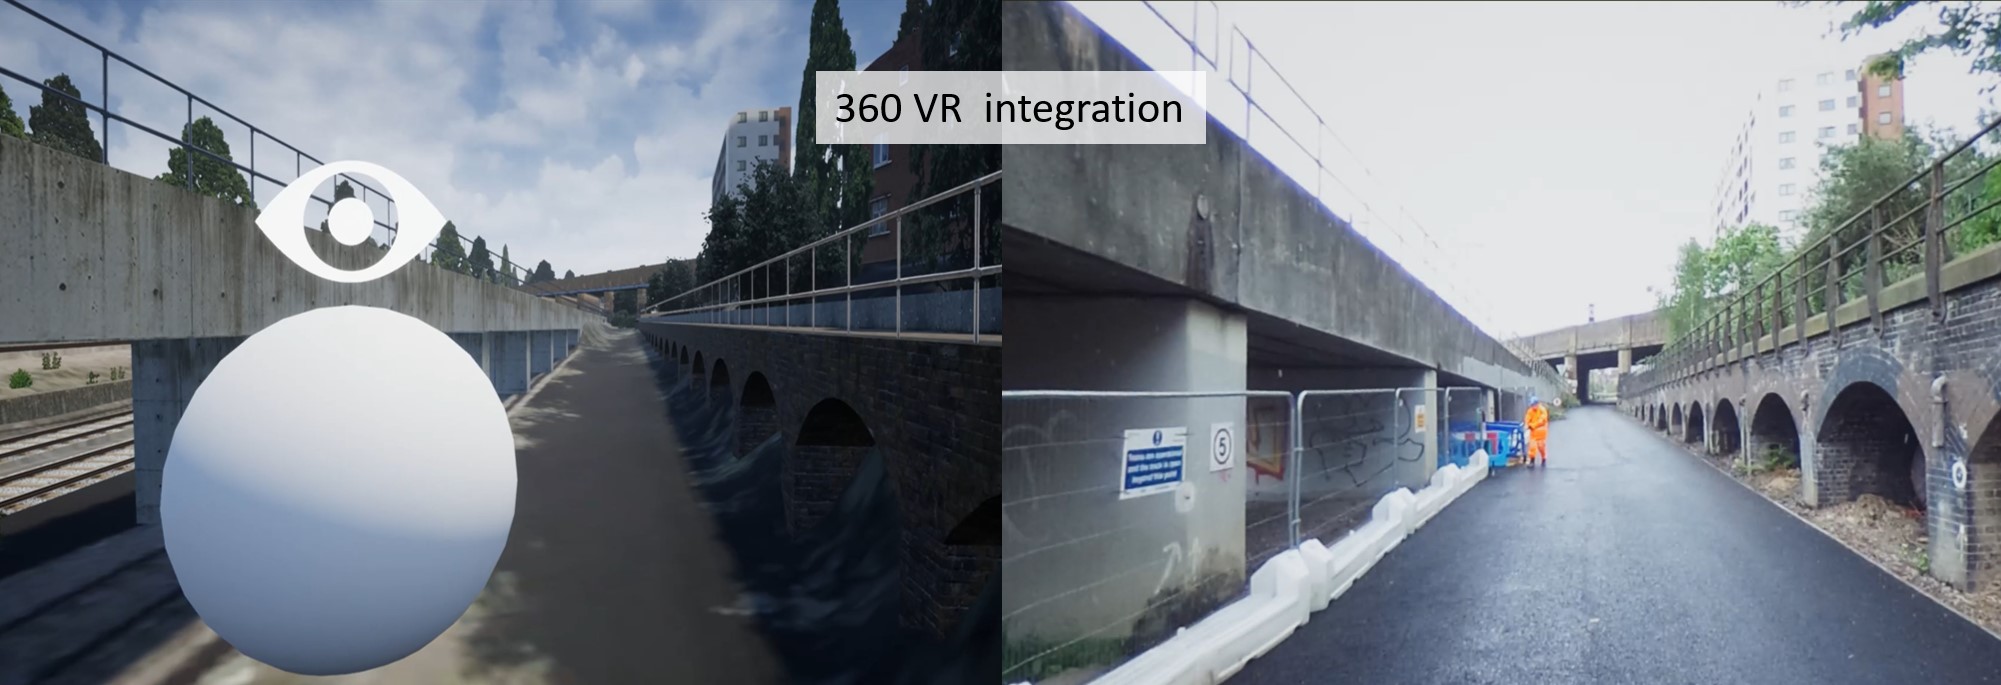 360 VR Integration